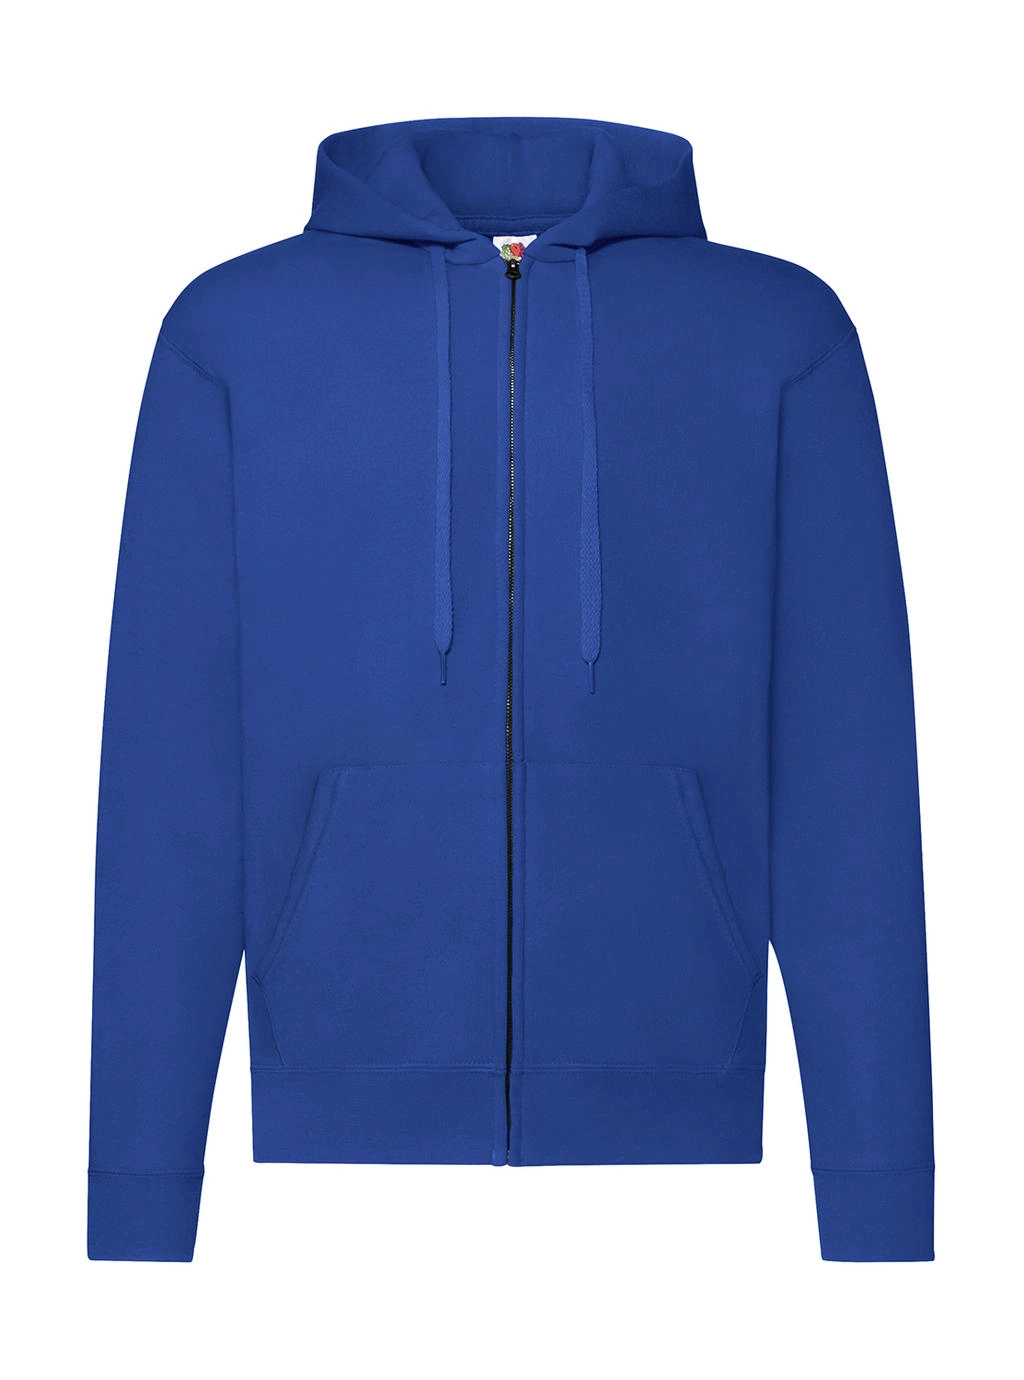 Classic Hooded Sweat Jacket zum Besticken und Bedrucken in der Farbe Royal Blue mit Ihren Logo, Schriftzug oder Motiv.